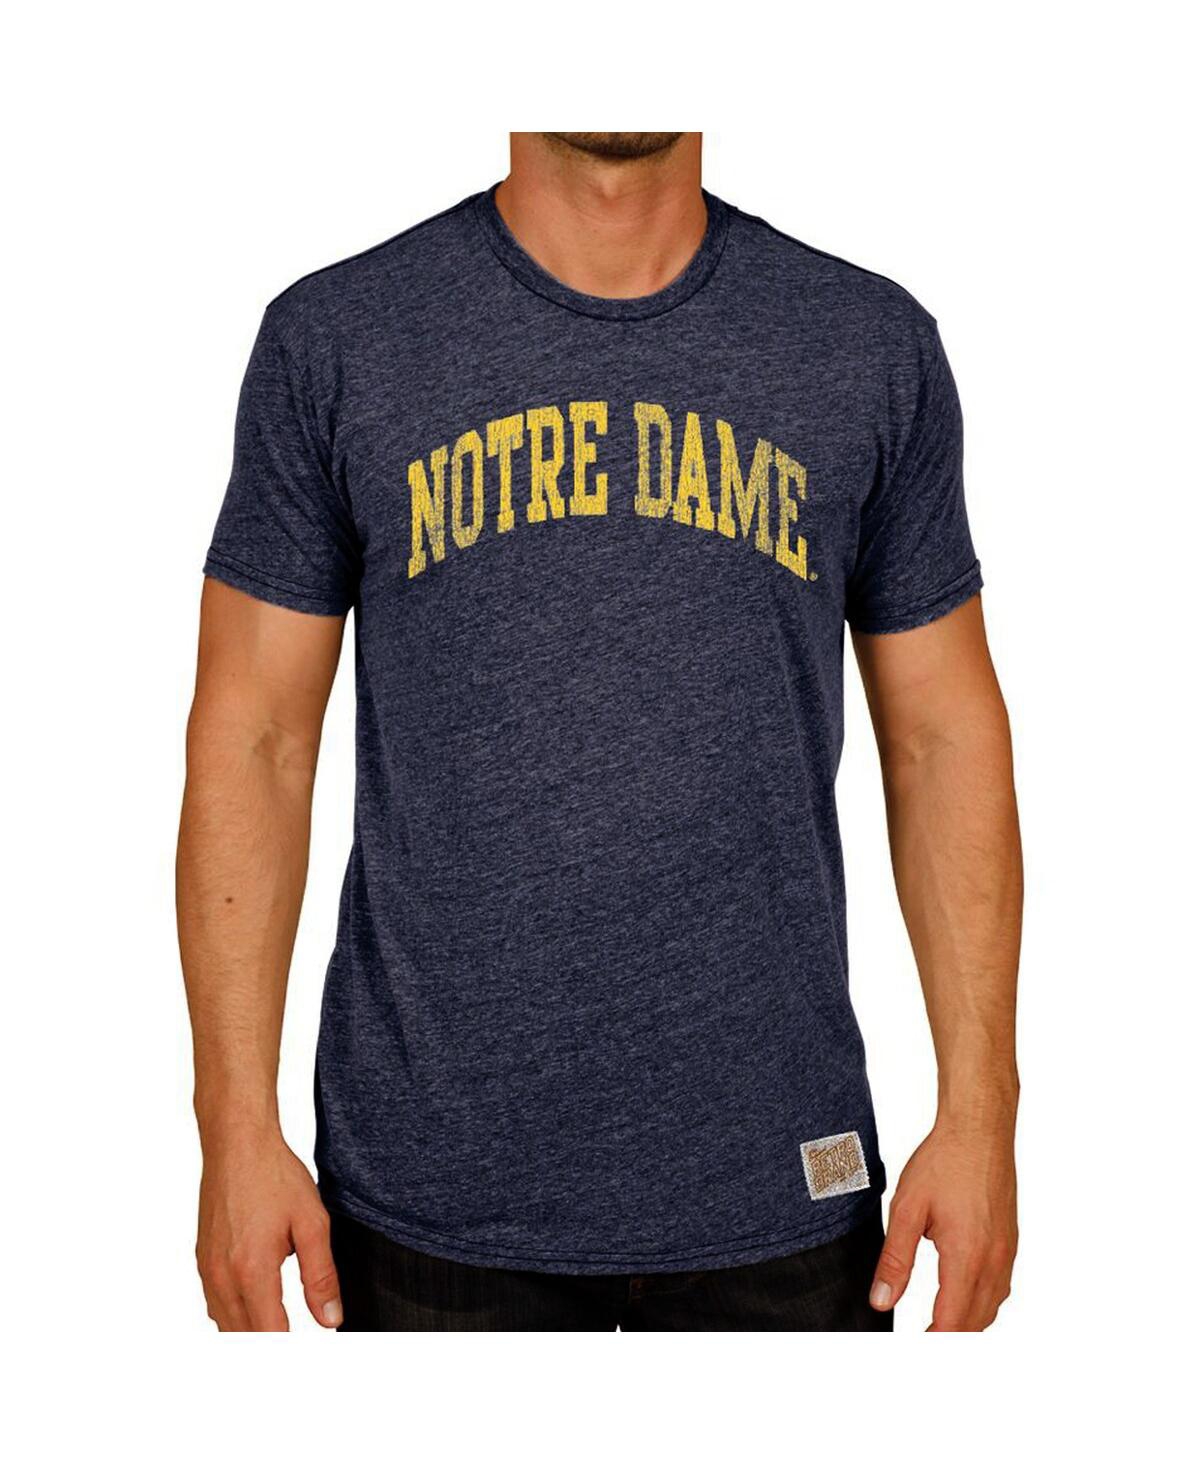 Men's Original Retro Brand Heather Navy Notre Dame Fighting Irish Vintage-Inspired Arch Tri-Blend T-shirt - Heather Navy